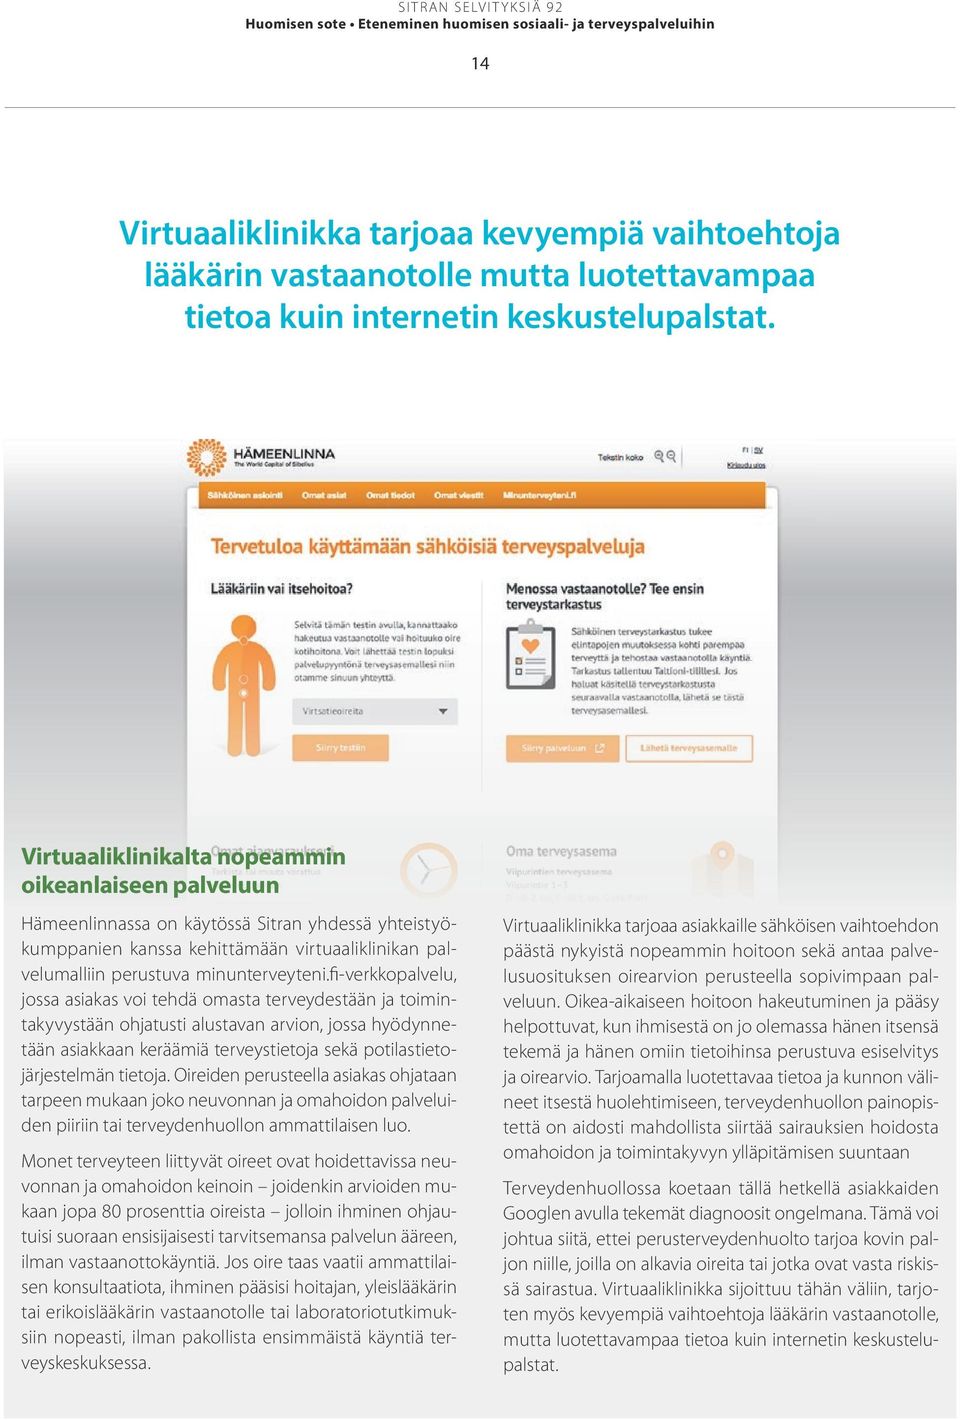 Virtuaaliklinikalta nopeammin oikeanlaiseen palveluun Hämeenlinnassa on käytössä Sitran yhdessä yhteistyökumppanien kanssa kehittämään virtuaaliklinikan palvelumalliin perustuva minunterveyteni.